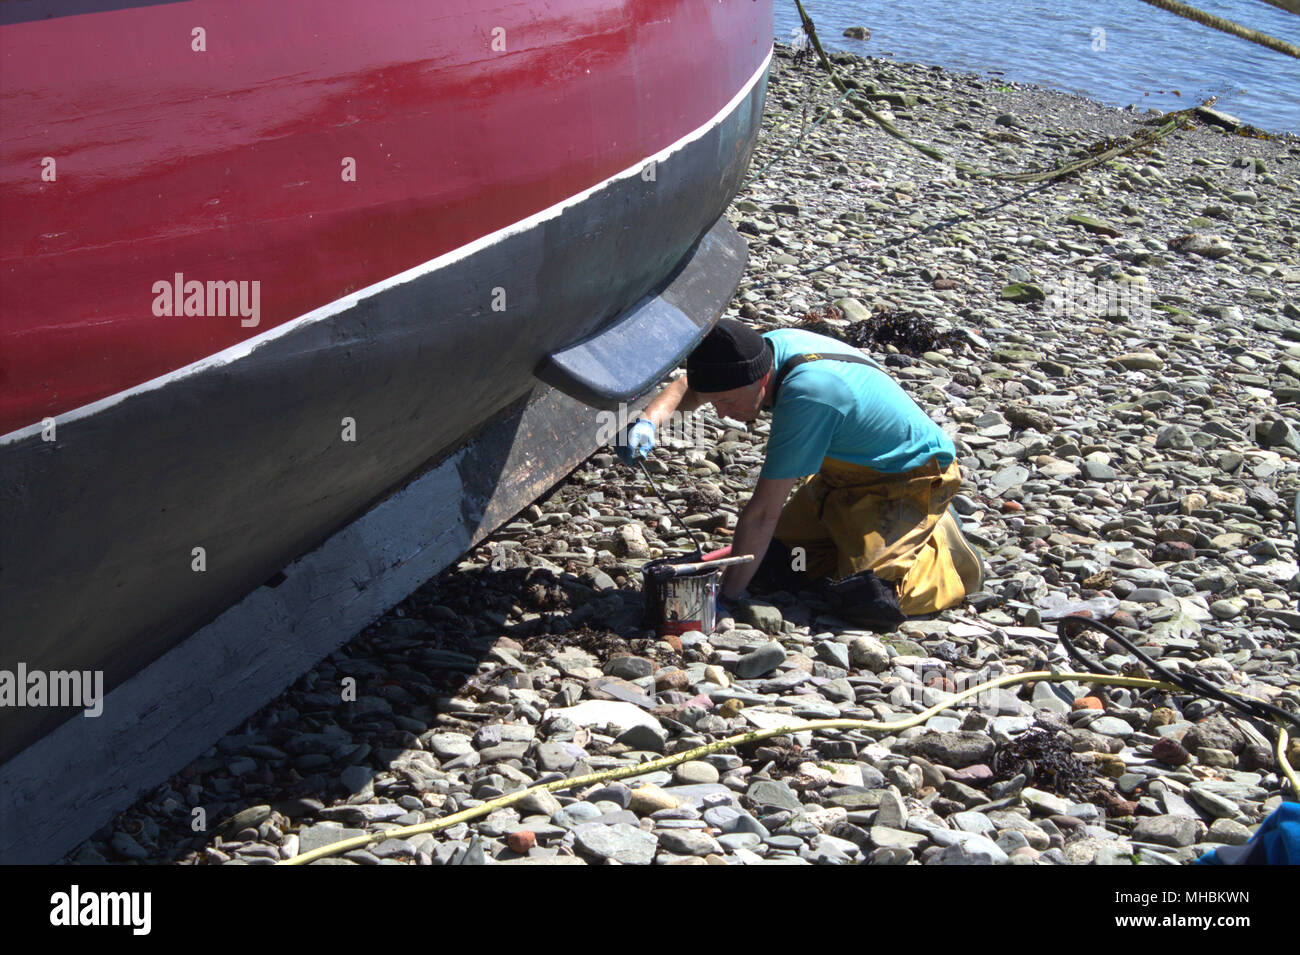 Fisherman pittura antivegetativa sulla carena della sua barca da pesca, approfittando della bassa marea e caldo secco meteo. Foto Stock